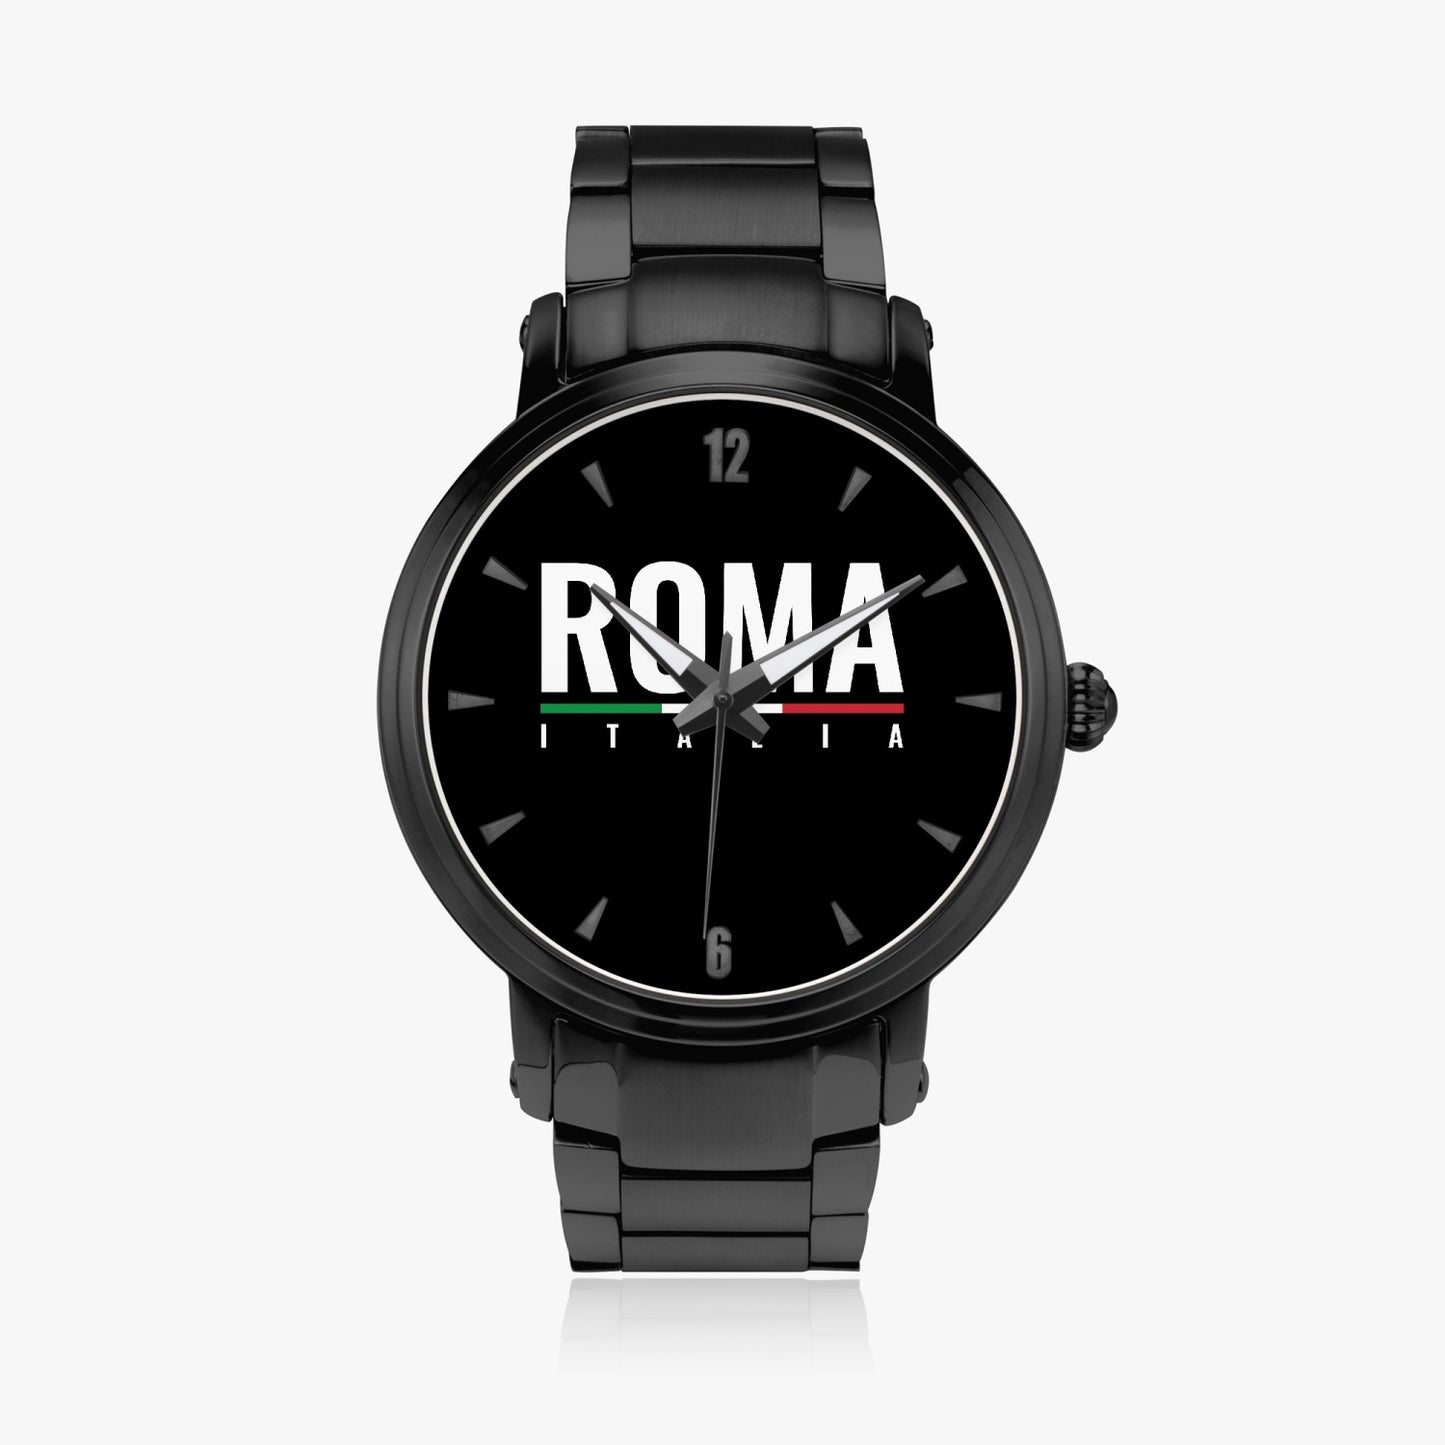 Orologio con movimento automatico Roma Italia - Acciaio inossidabile premium